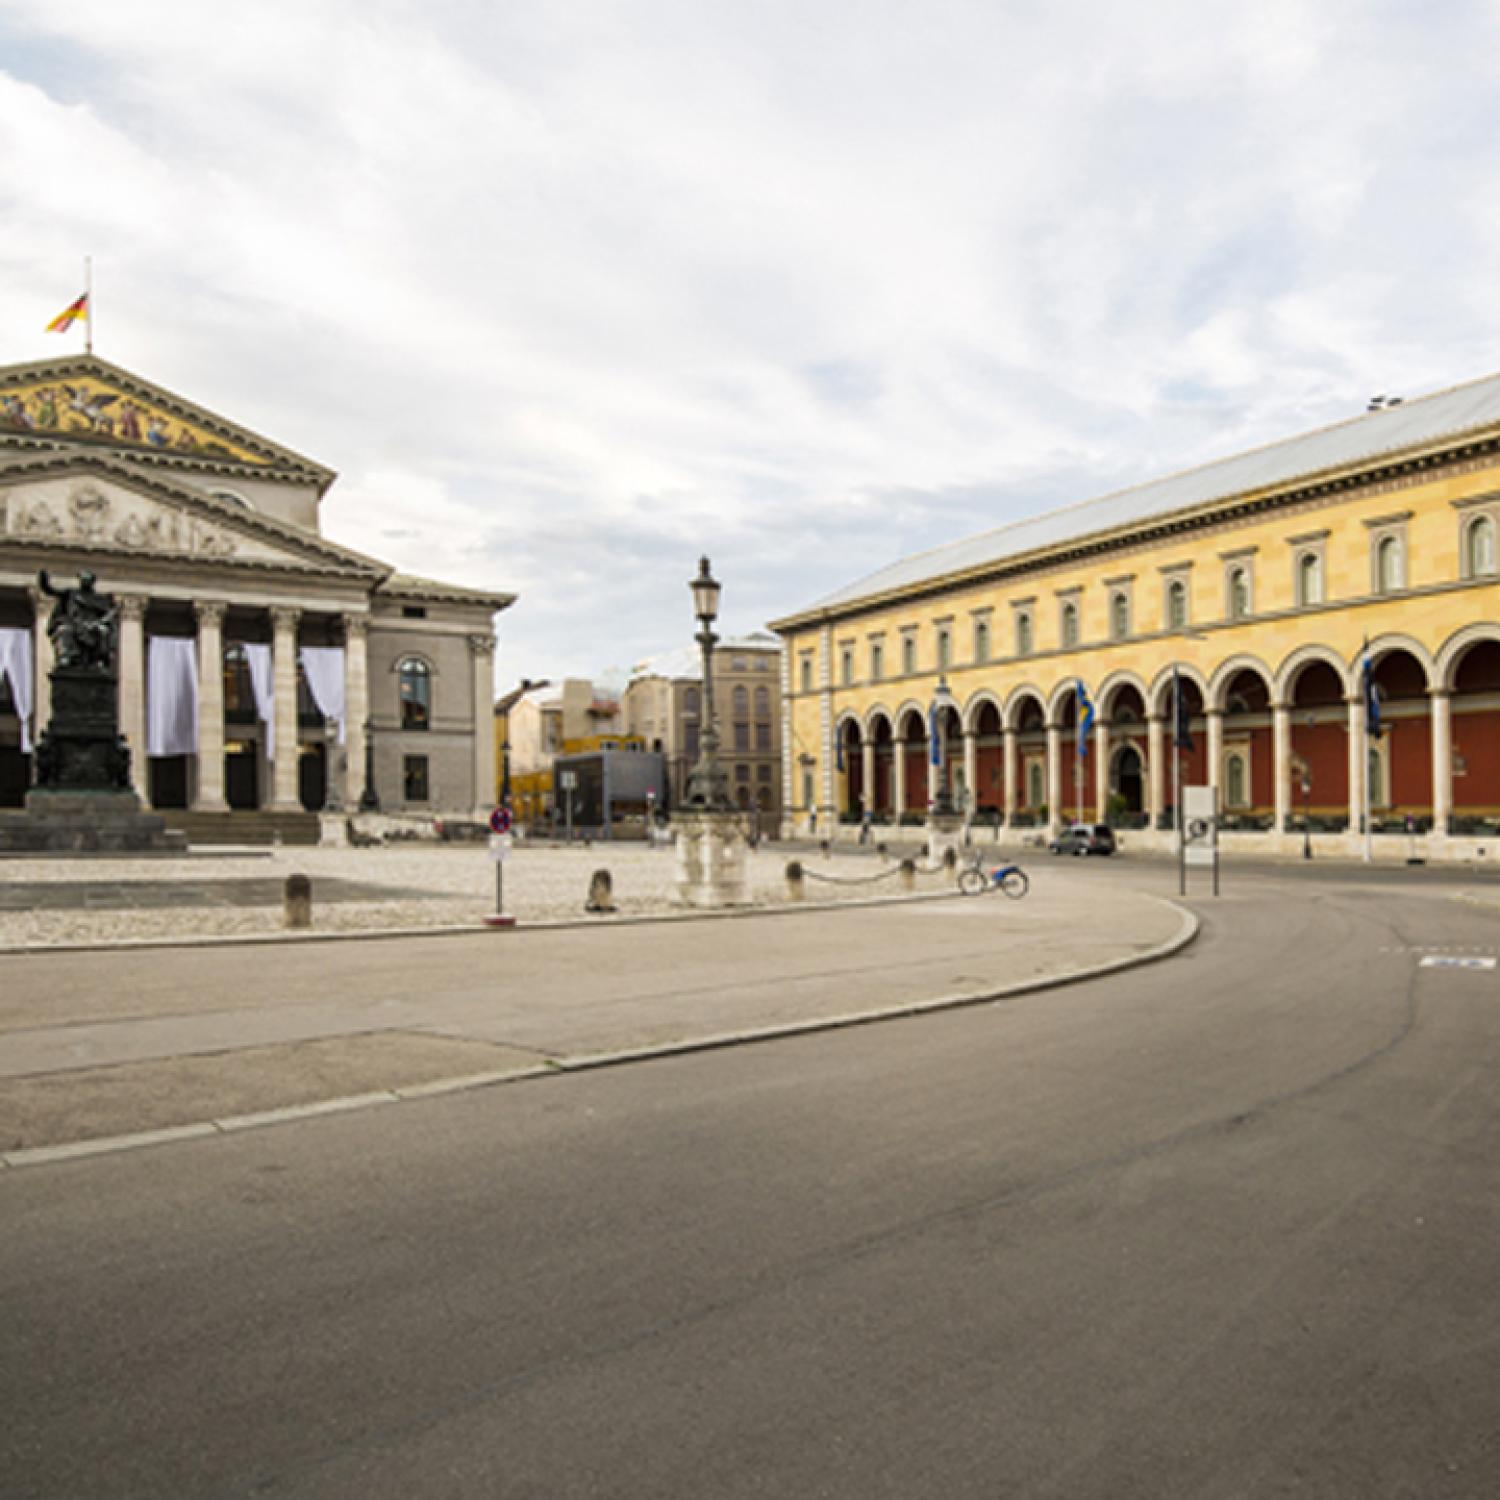 Palais An Der Oper